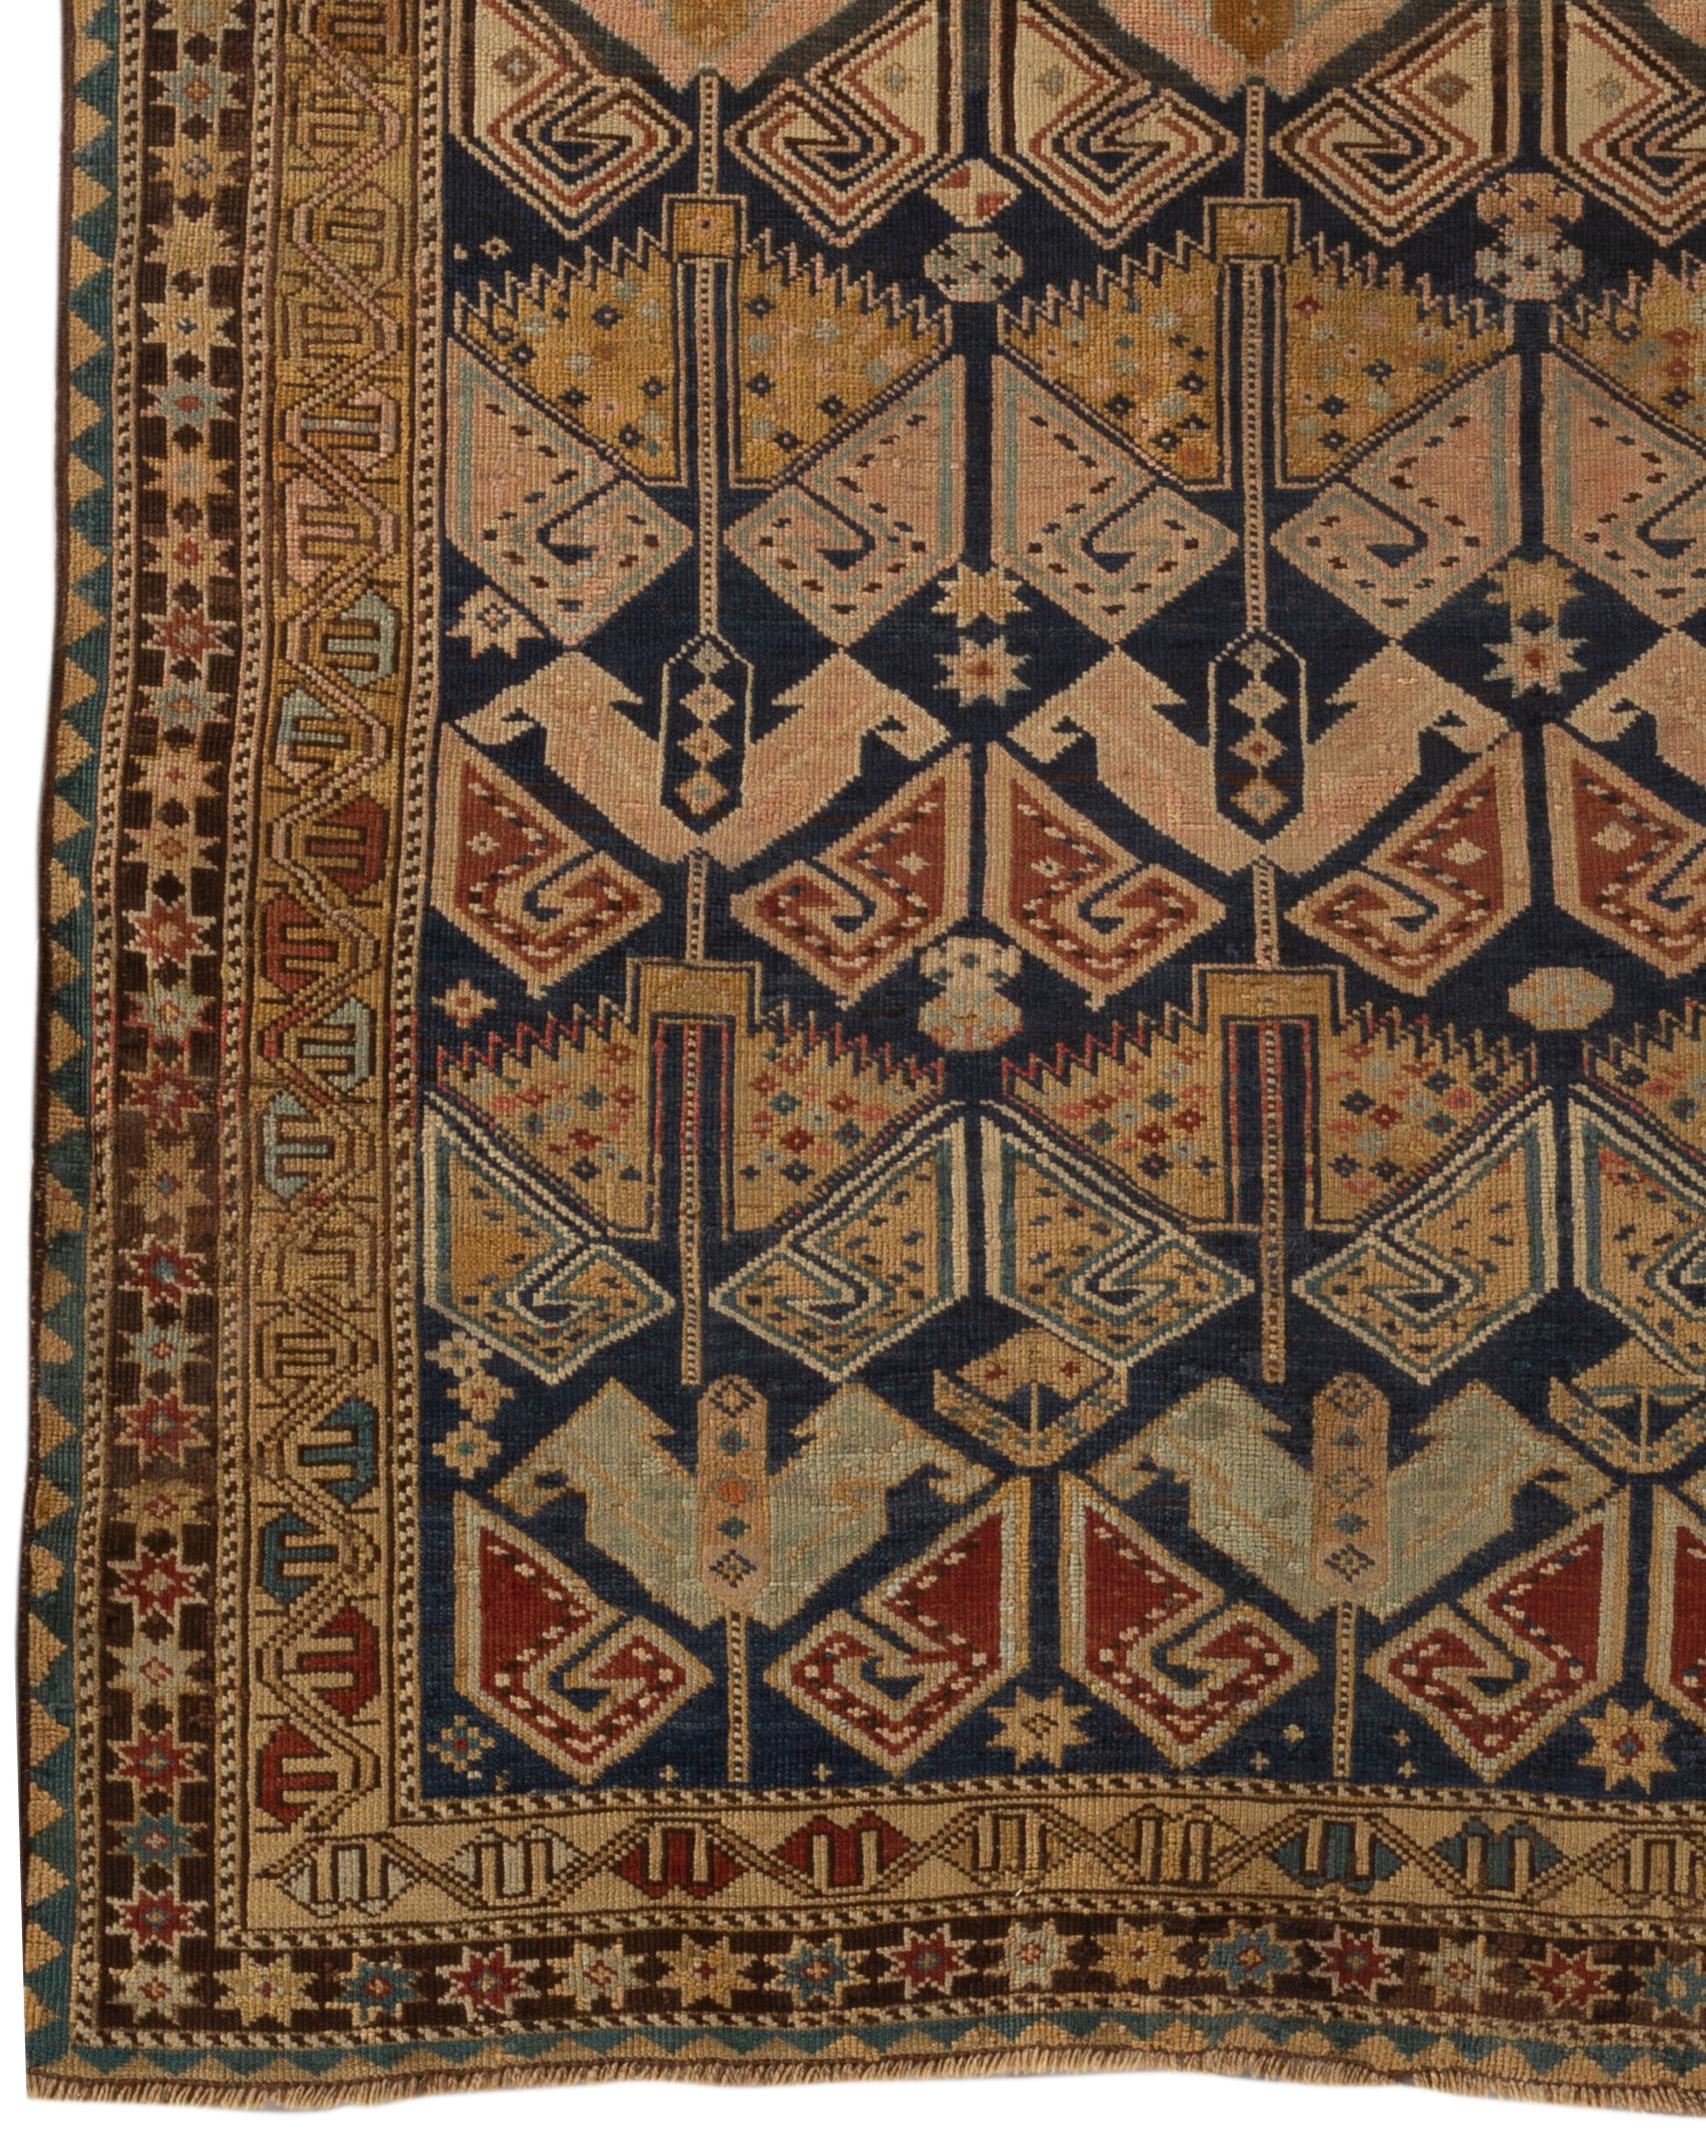 Ancien tapis caucasien de Shirvan, vers 1880. Ces types de tapis caucasiens anciens ont été tissés dans la partie orientale de la région, principalement le long de la côte ouest de la mer Caspienne, et présentent dans leur design le style ethnique